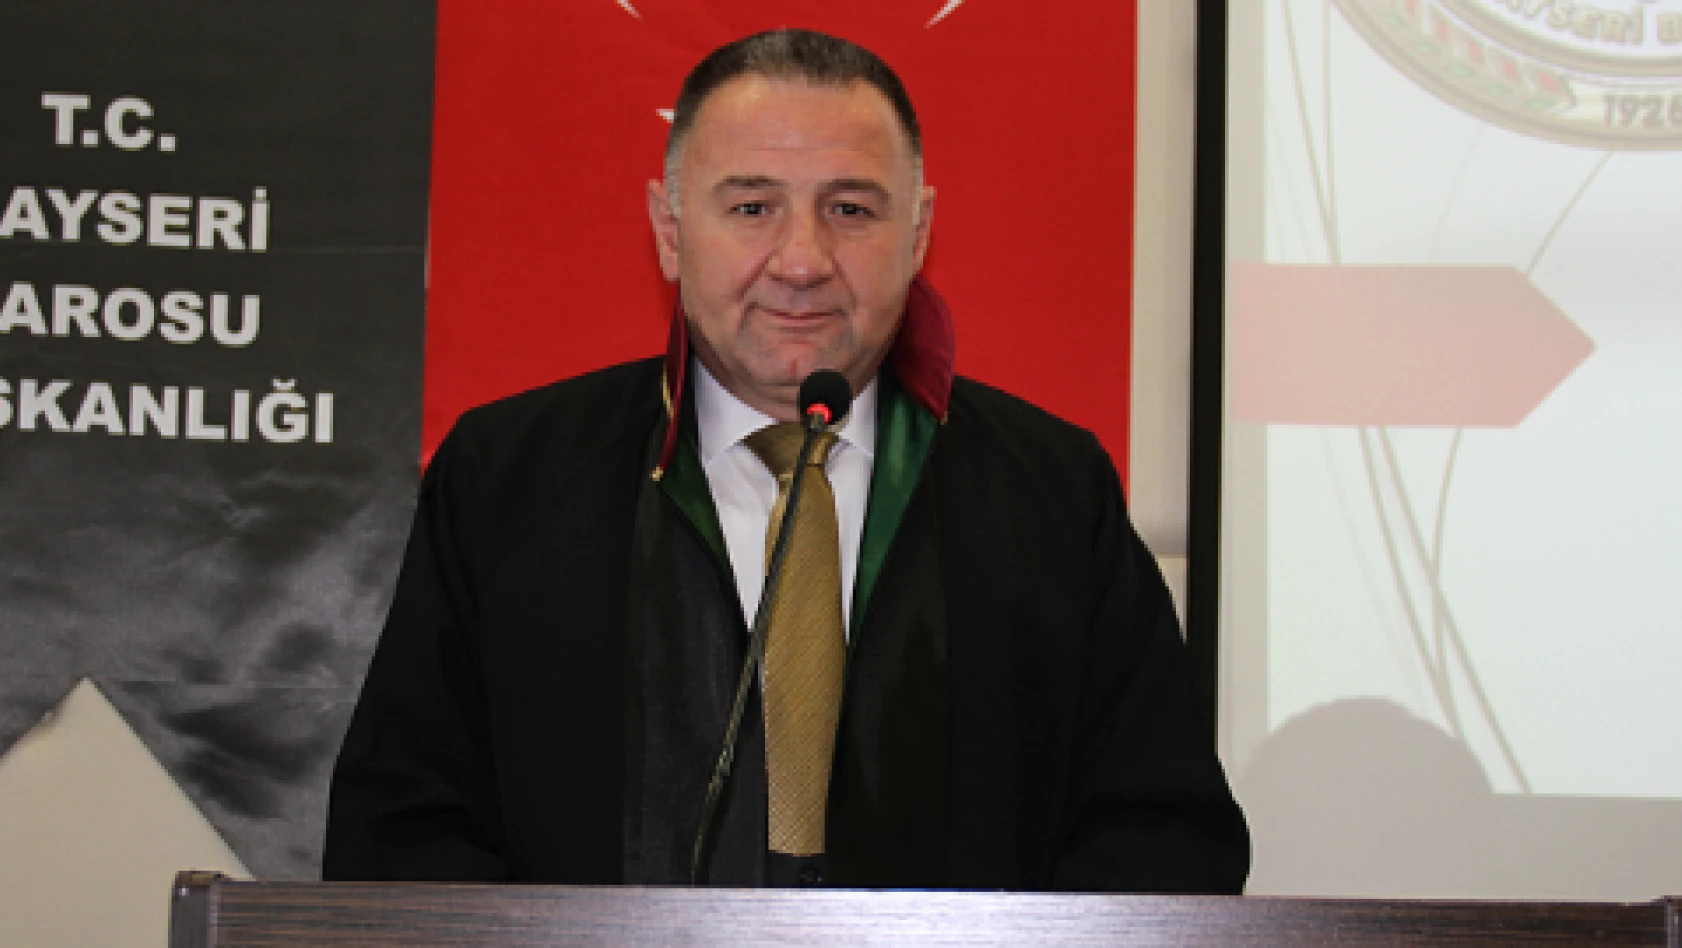 Kayseri Baro Başkanı Dursun: 'Uzun bir eylem planının üçüncü halkasındayız'